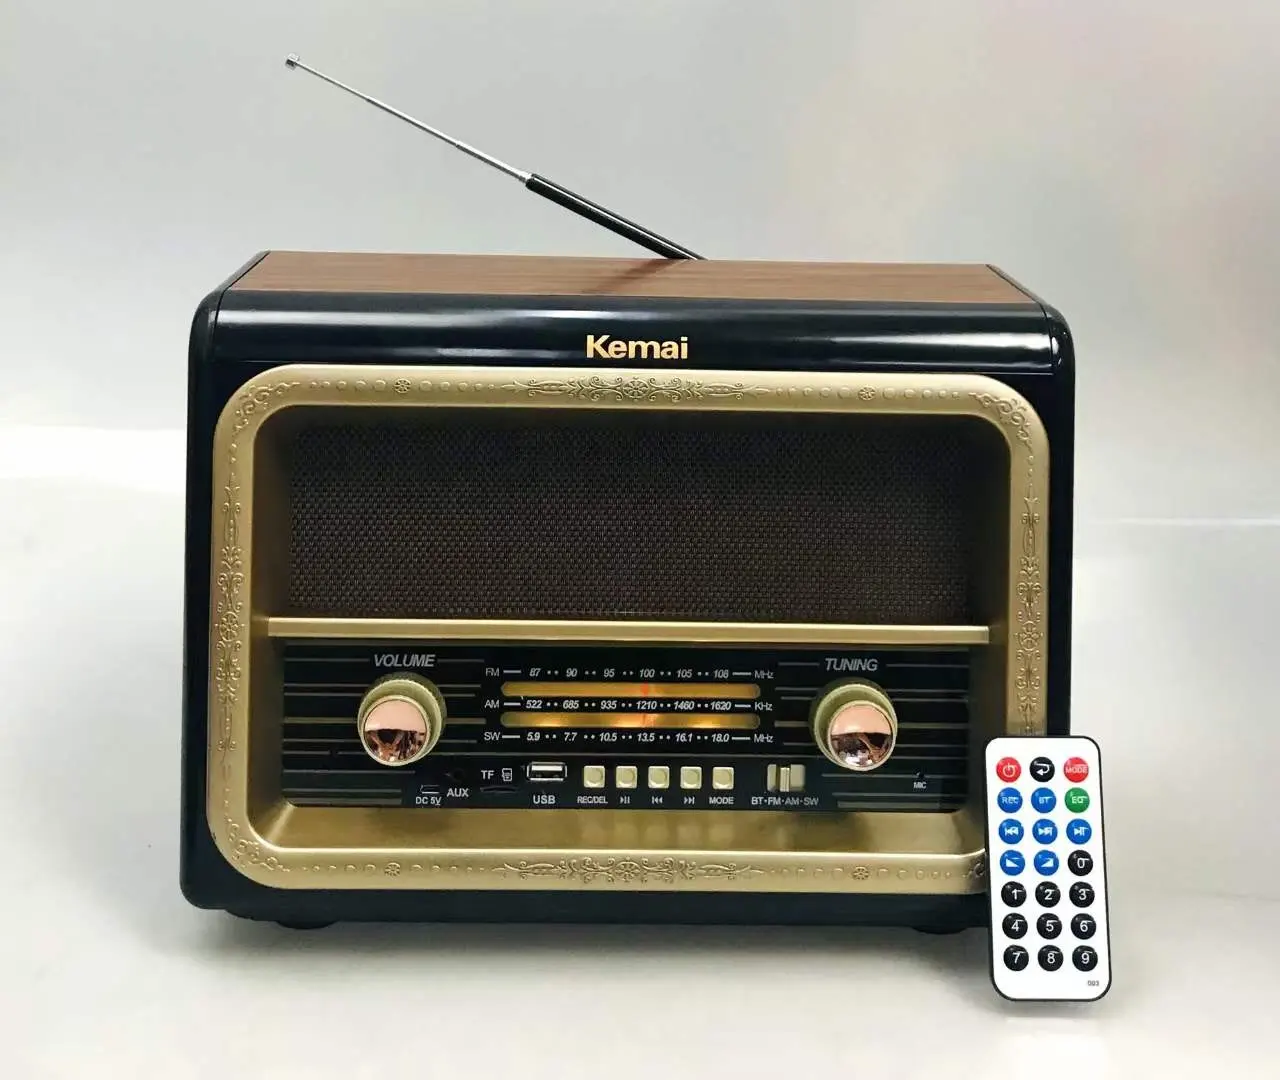 Rádio kemai, MD-1911BT fm am sw 3 band retrô vintage rádio de madeira com usb sd tf mp3 player